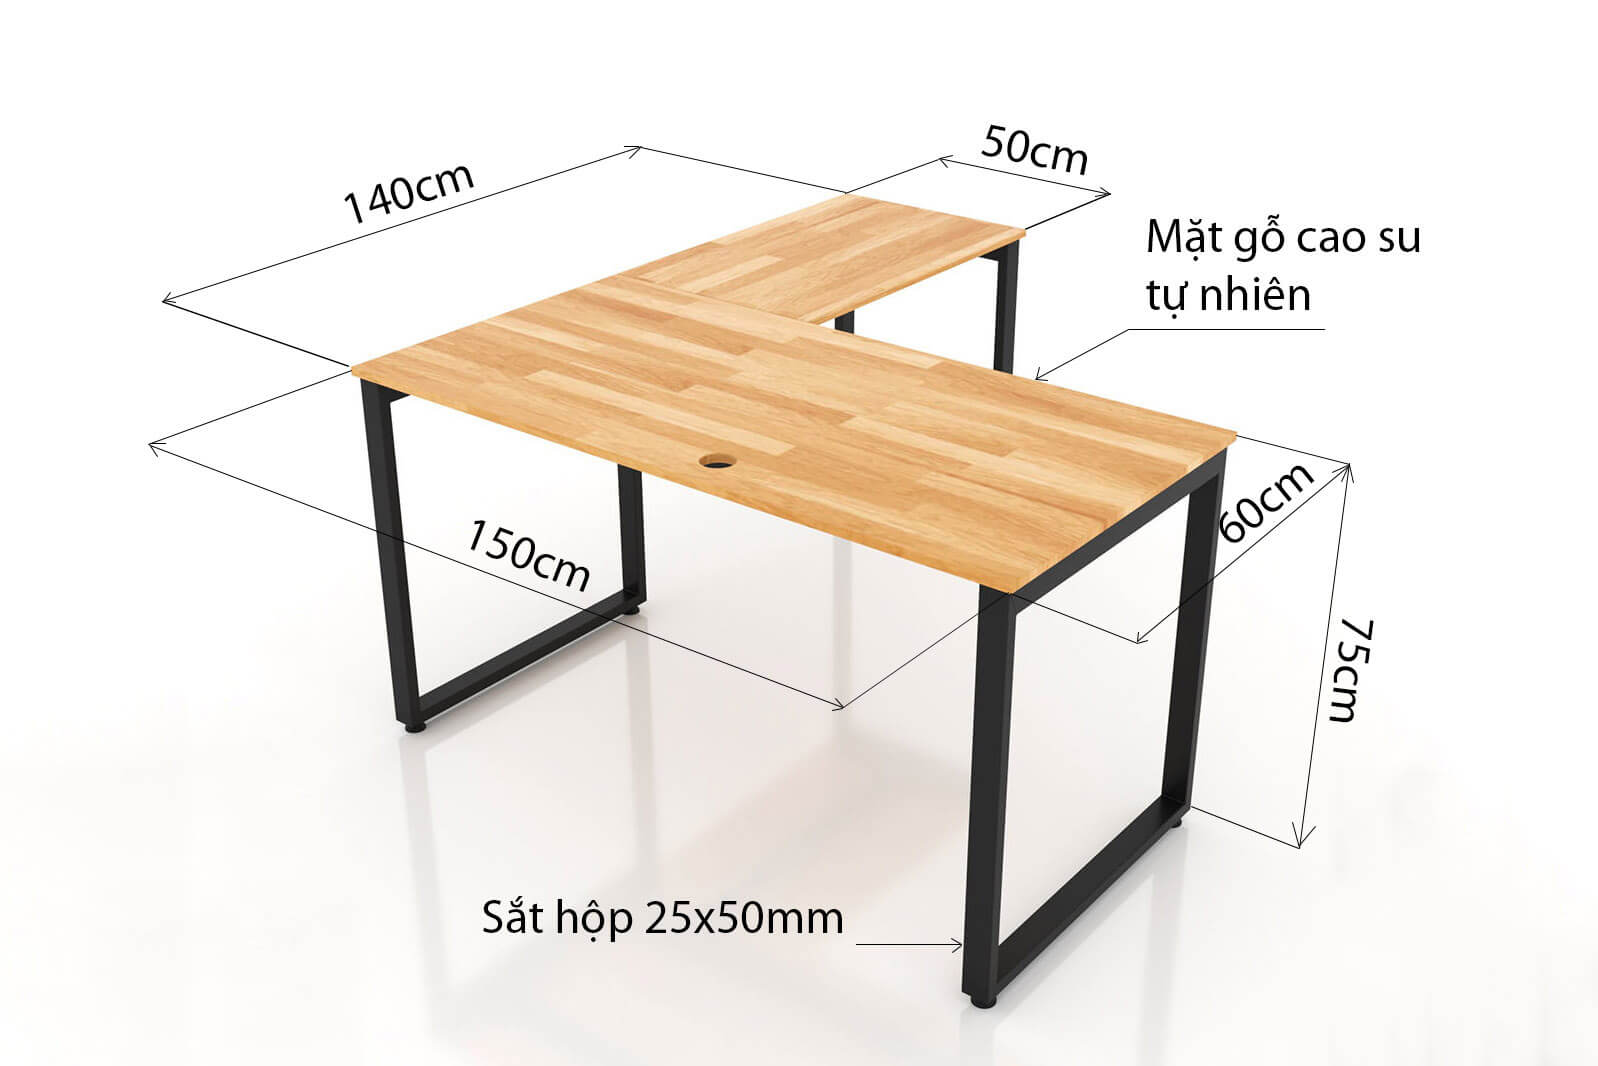 Kích thước bàn làm việc cân đối với diện tích phòng